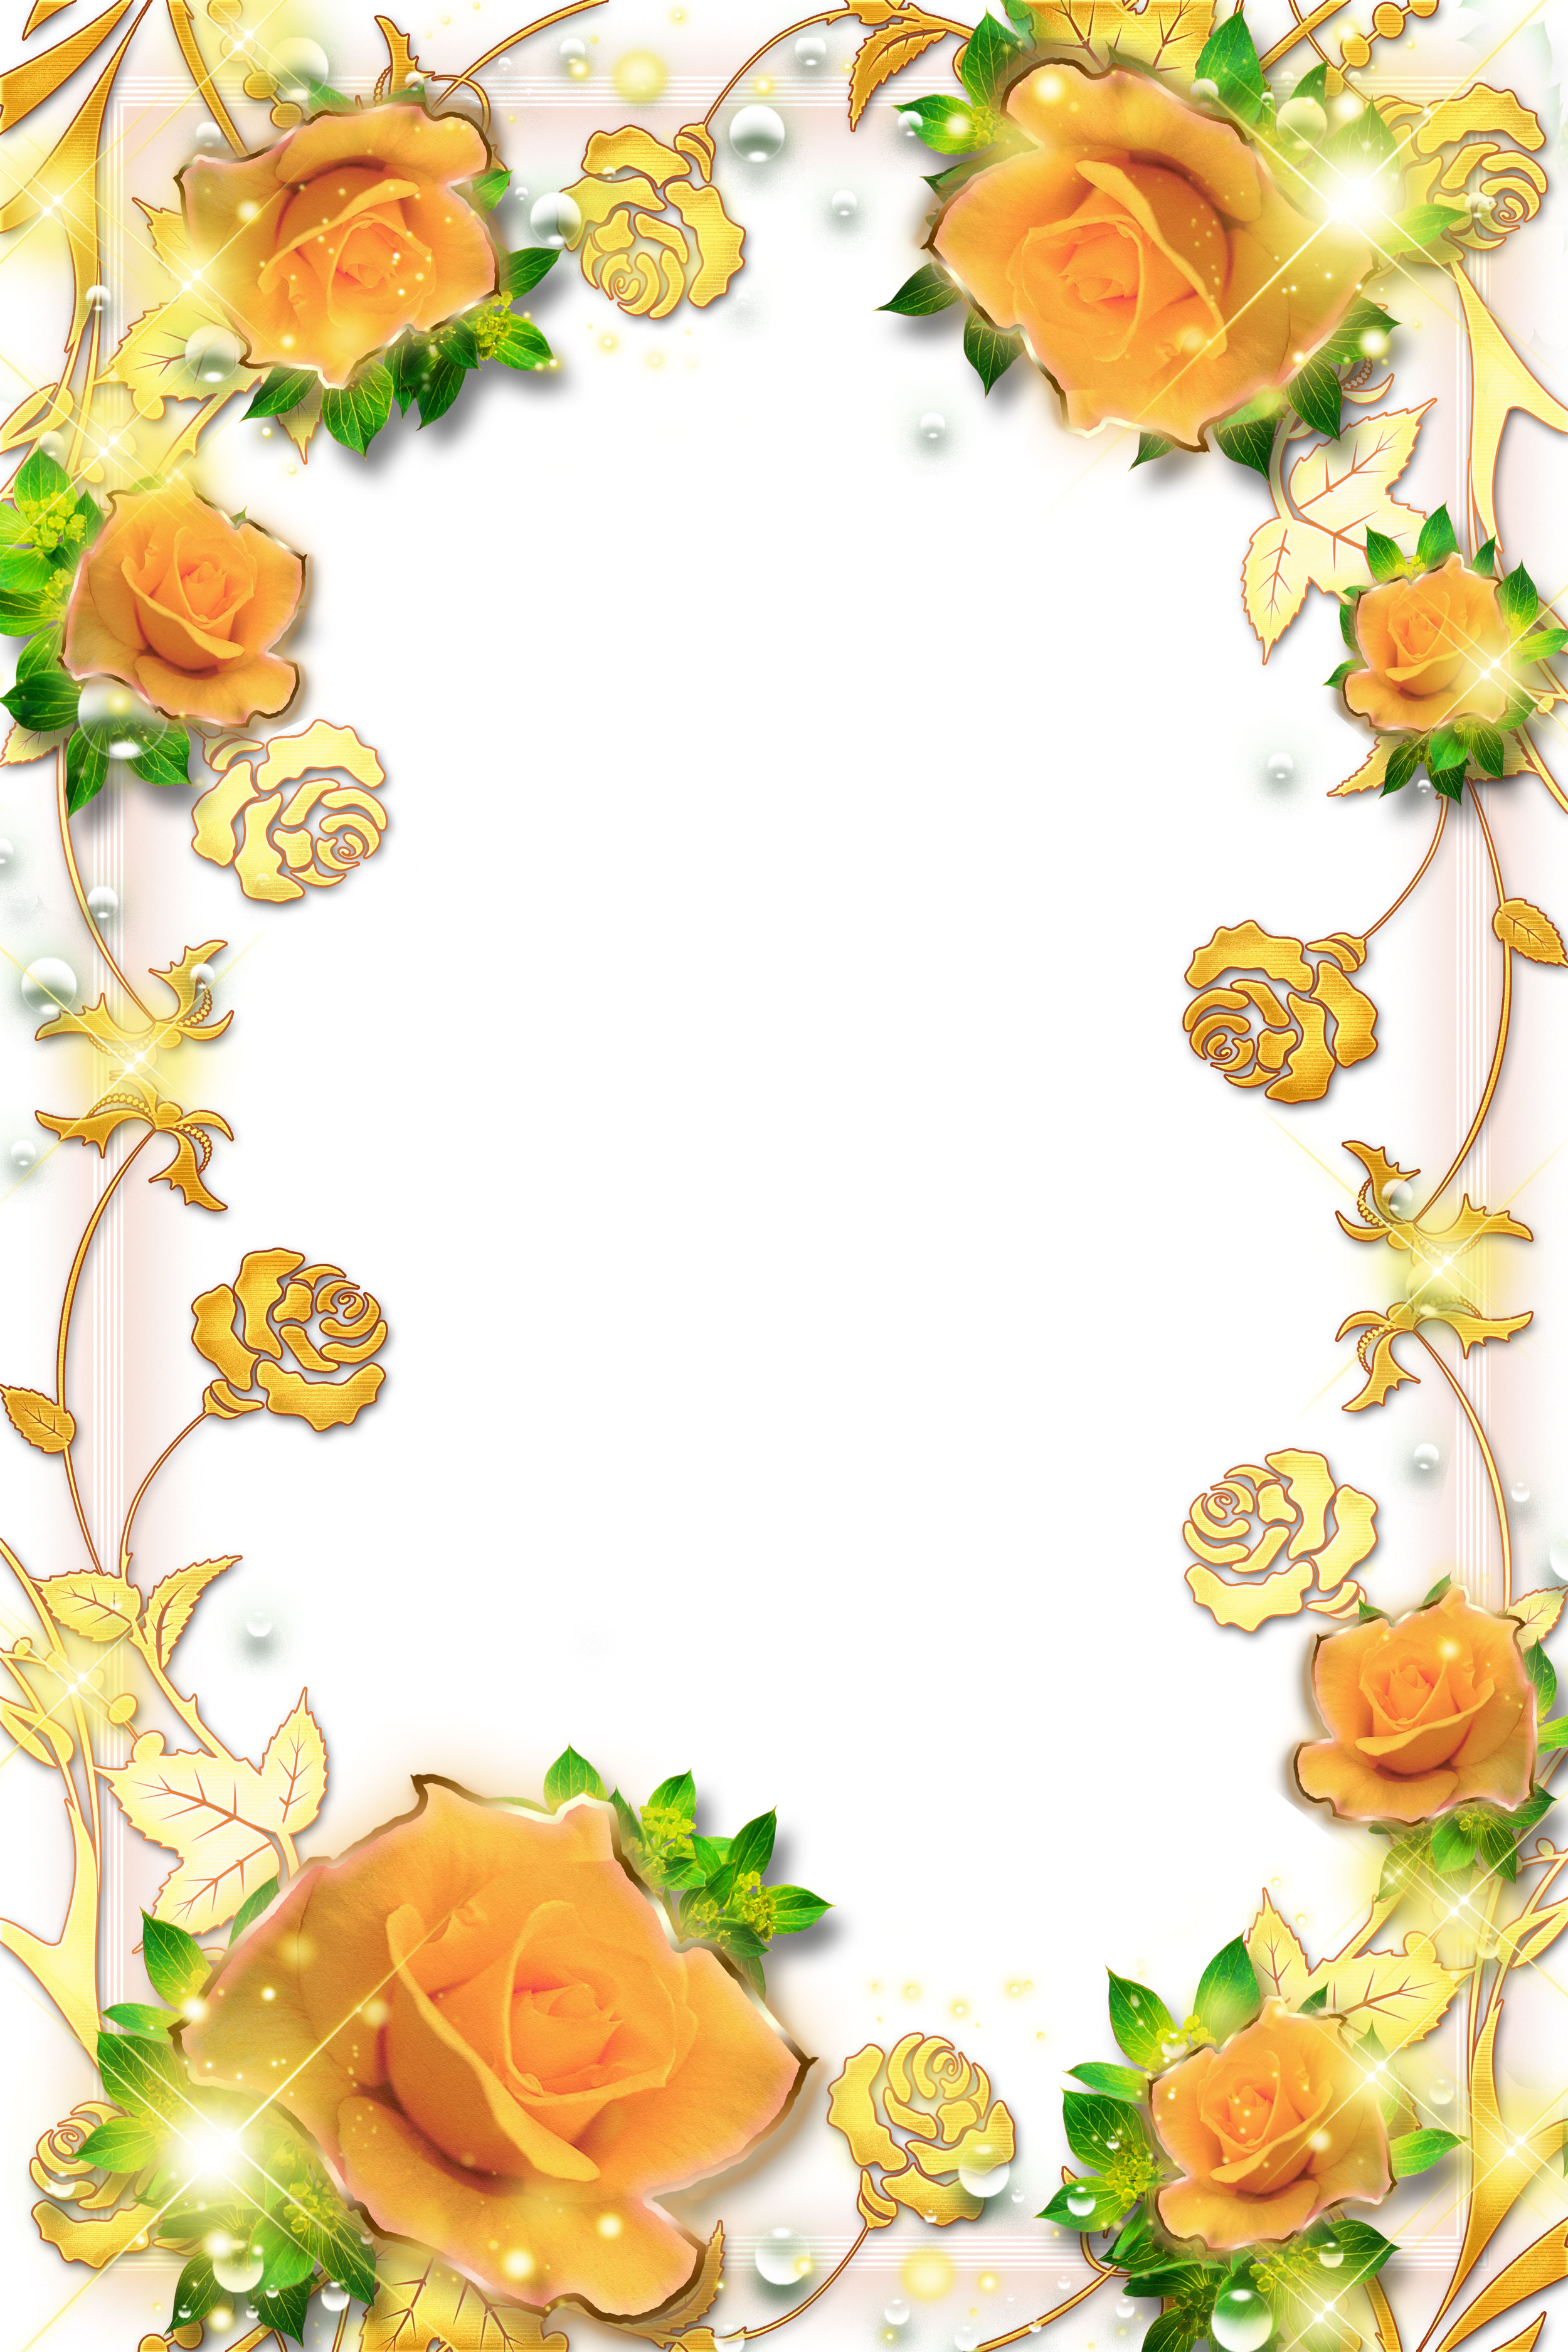 オレンジ色の花のイラスト フリー素材 壁紙 背景no 219 オレンジのバラ 金色